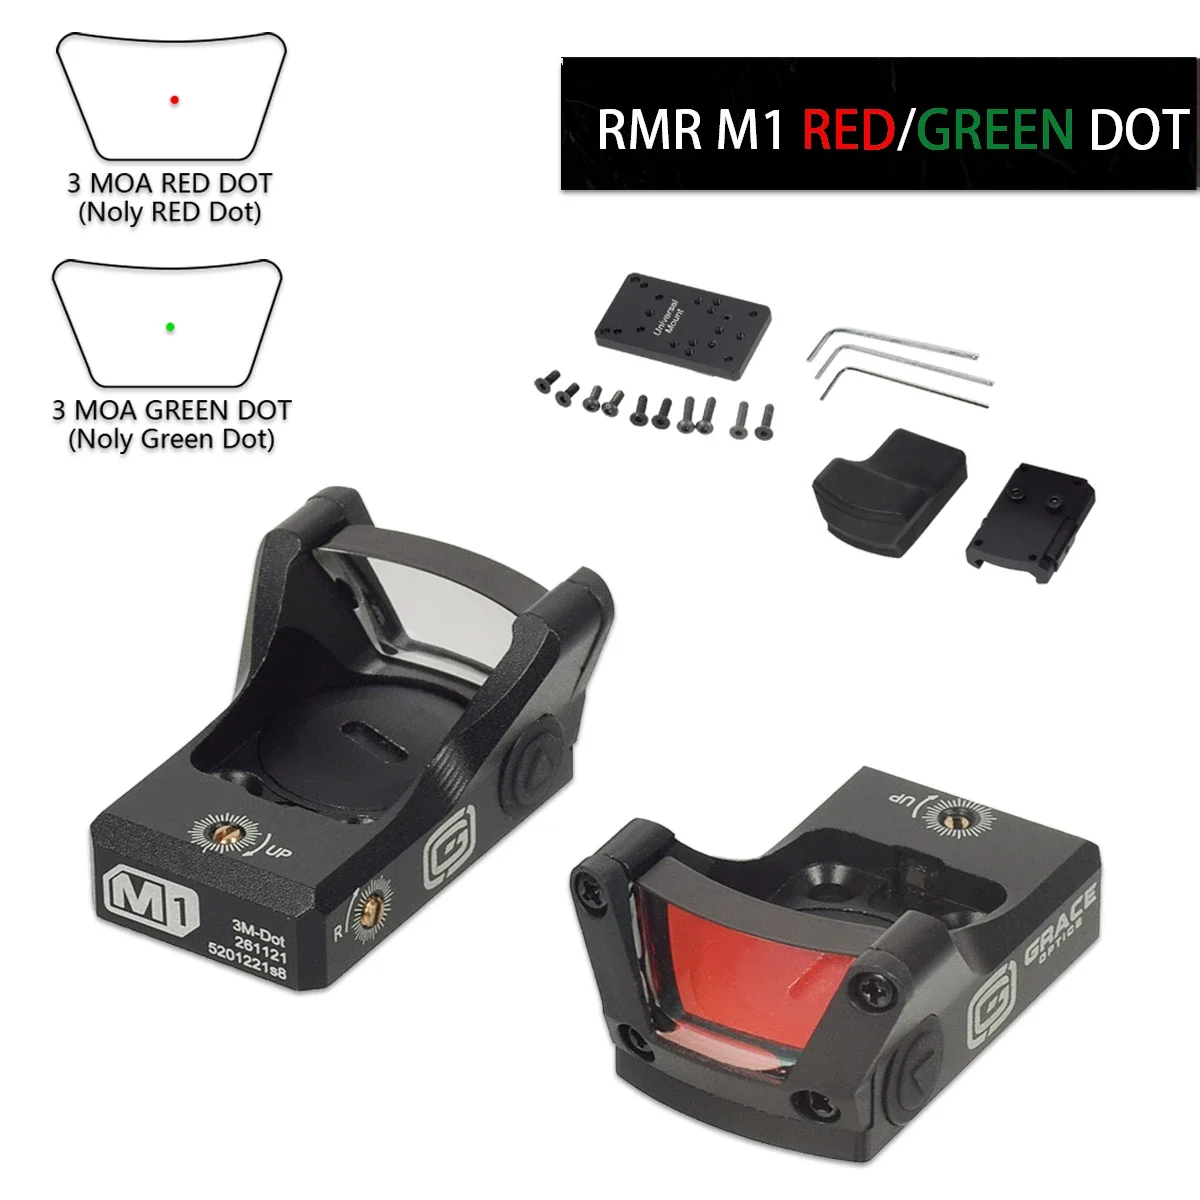 

Tactical Metal M1 RMR Red Dot Green Dot Sight Reflex Scope HuntingOptics Riflescope Fit 20mm Rail For Pistol Glock 17 19 AR15 M4